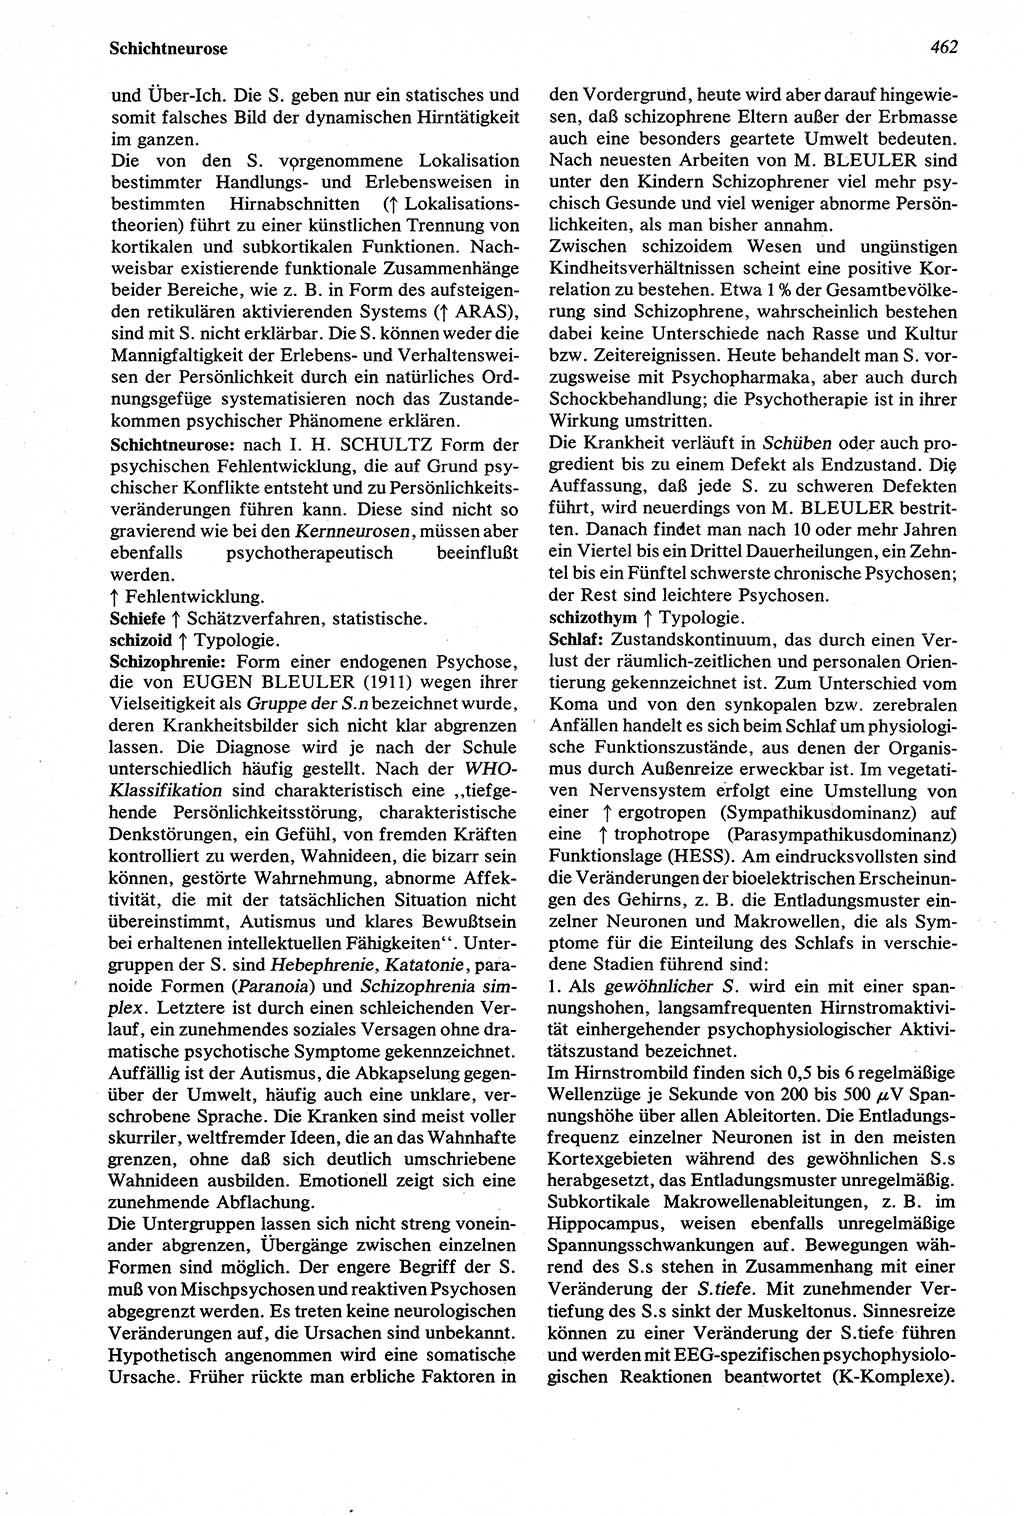 Wörterbuch der Psychologie [Deutsche Demokratische Republik (DDR)] 1976, Seite 462 (Wb. Psych. DDR 1976, S. 462)